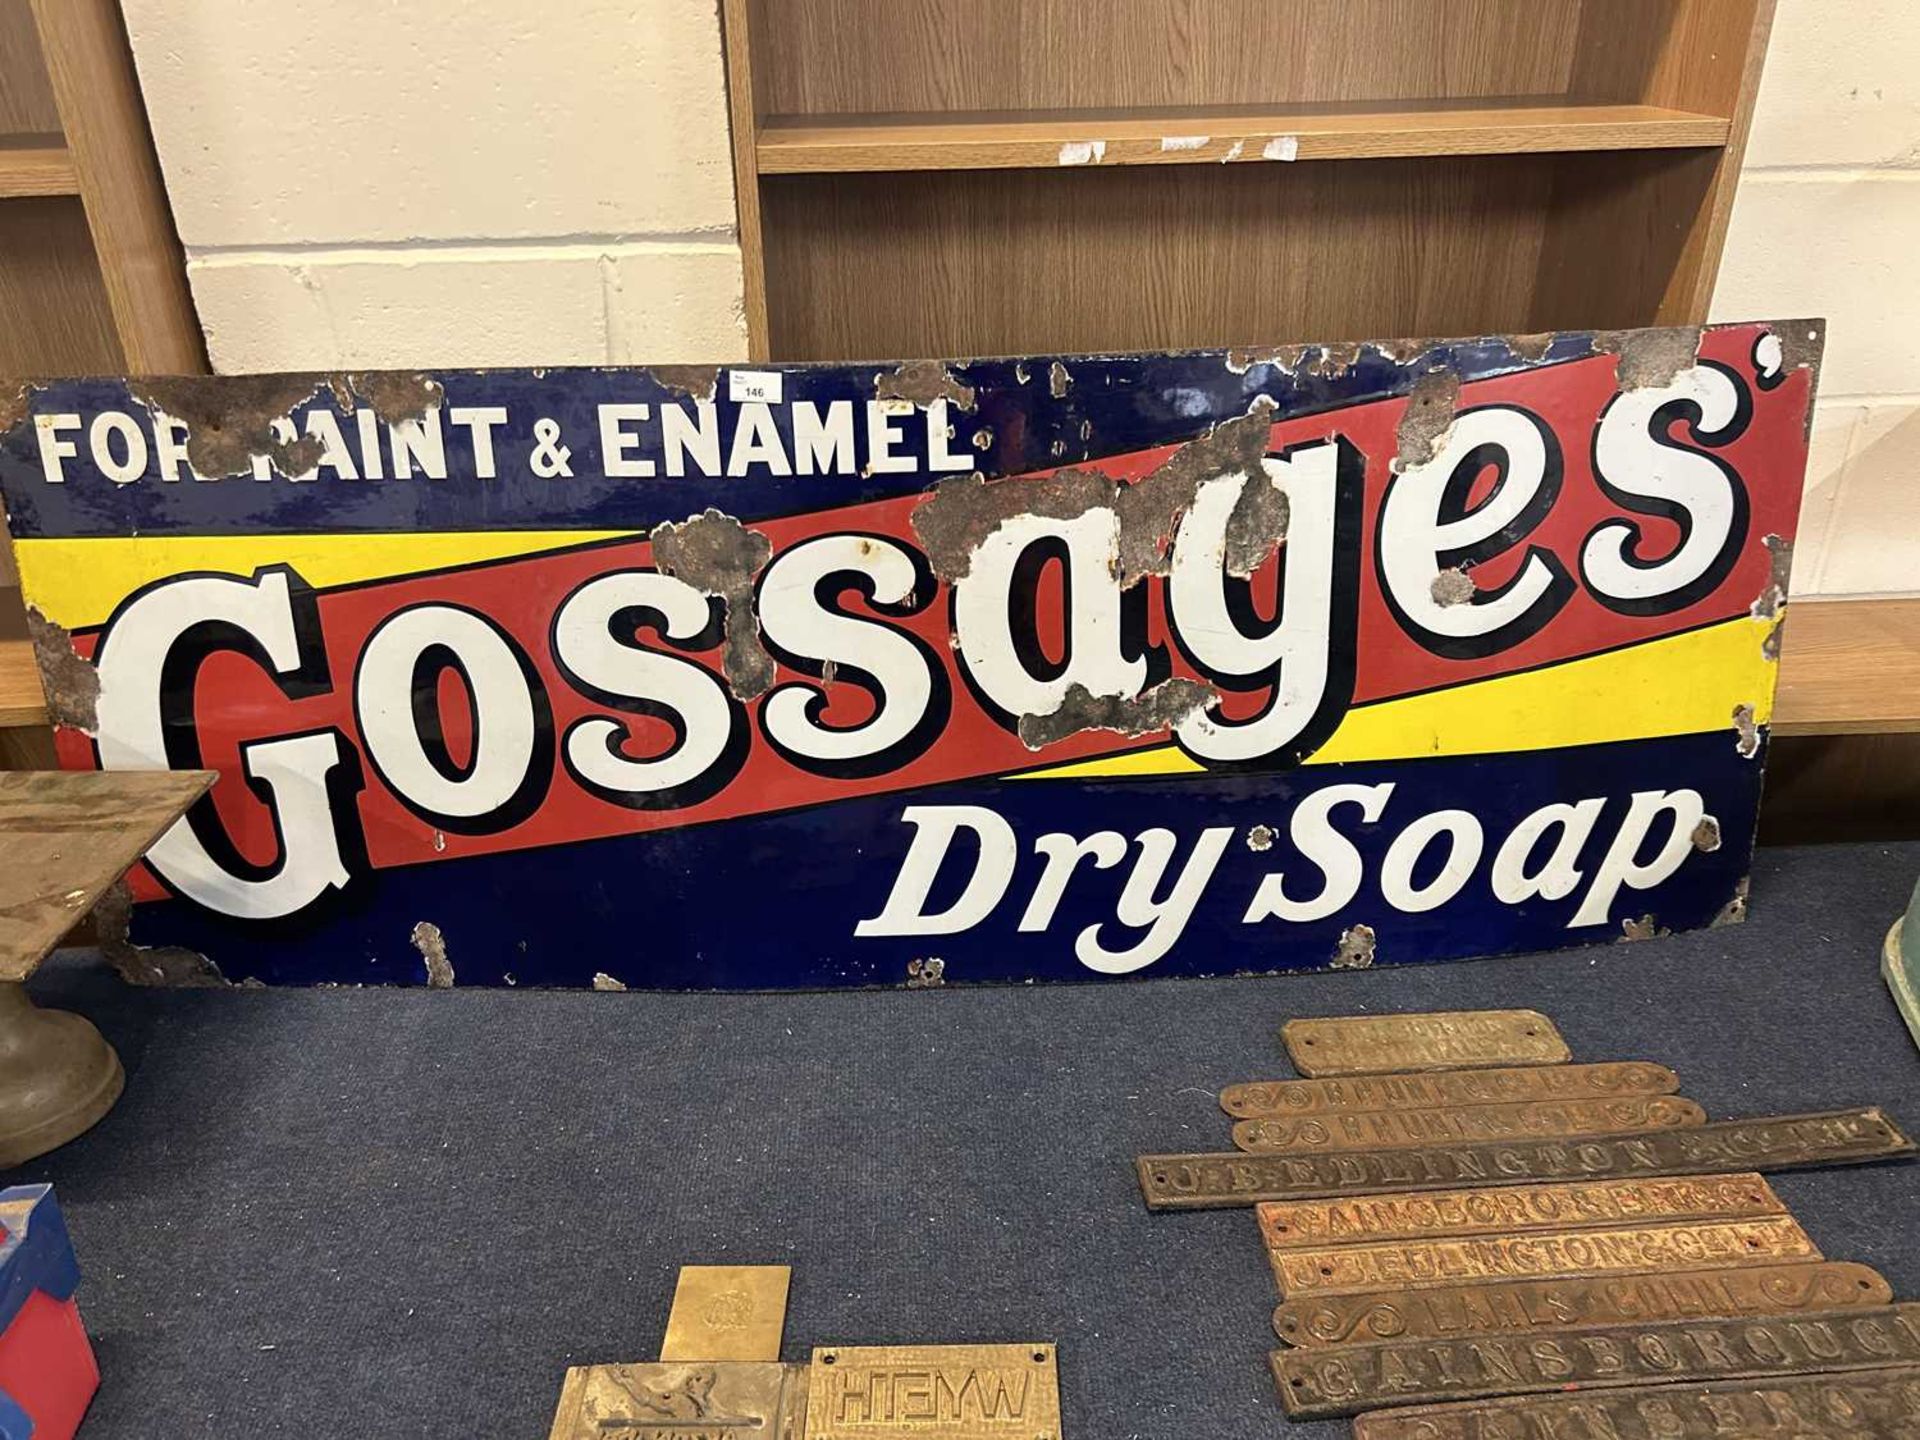 Large enamel signed 'Gossages Dry Soap', 145cm wide